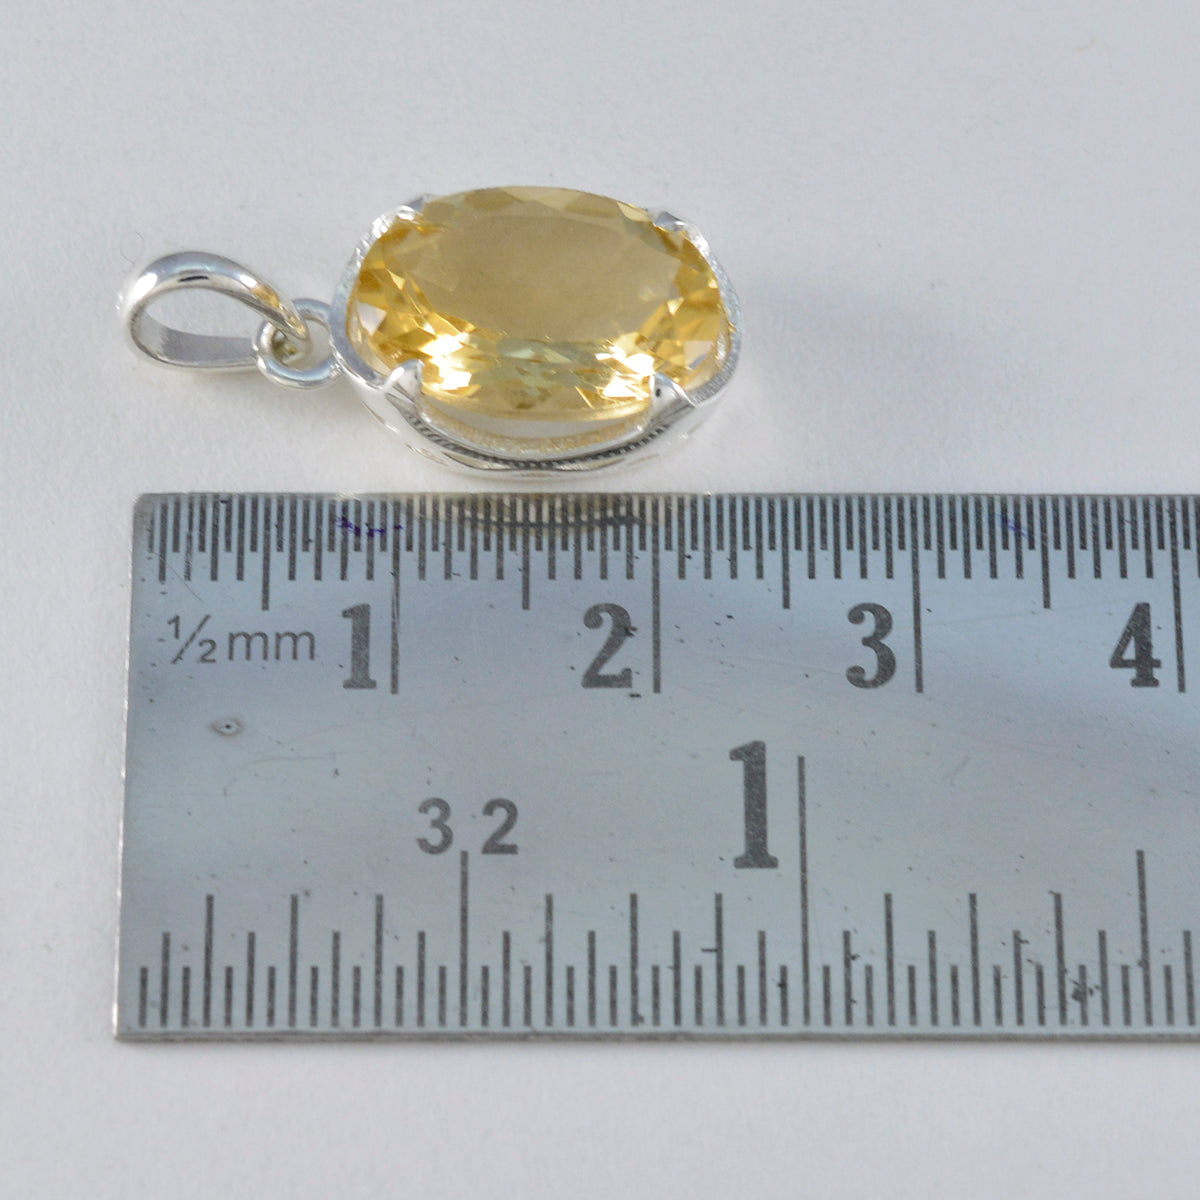 Riyo onweerstaanbare edelstenen ovale gefacetteerde gele citrien zilveren hanger cadeau voor vrouw